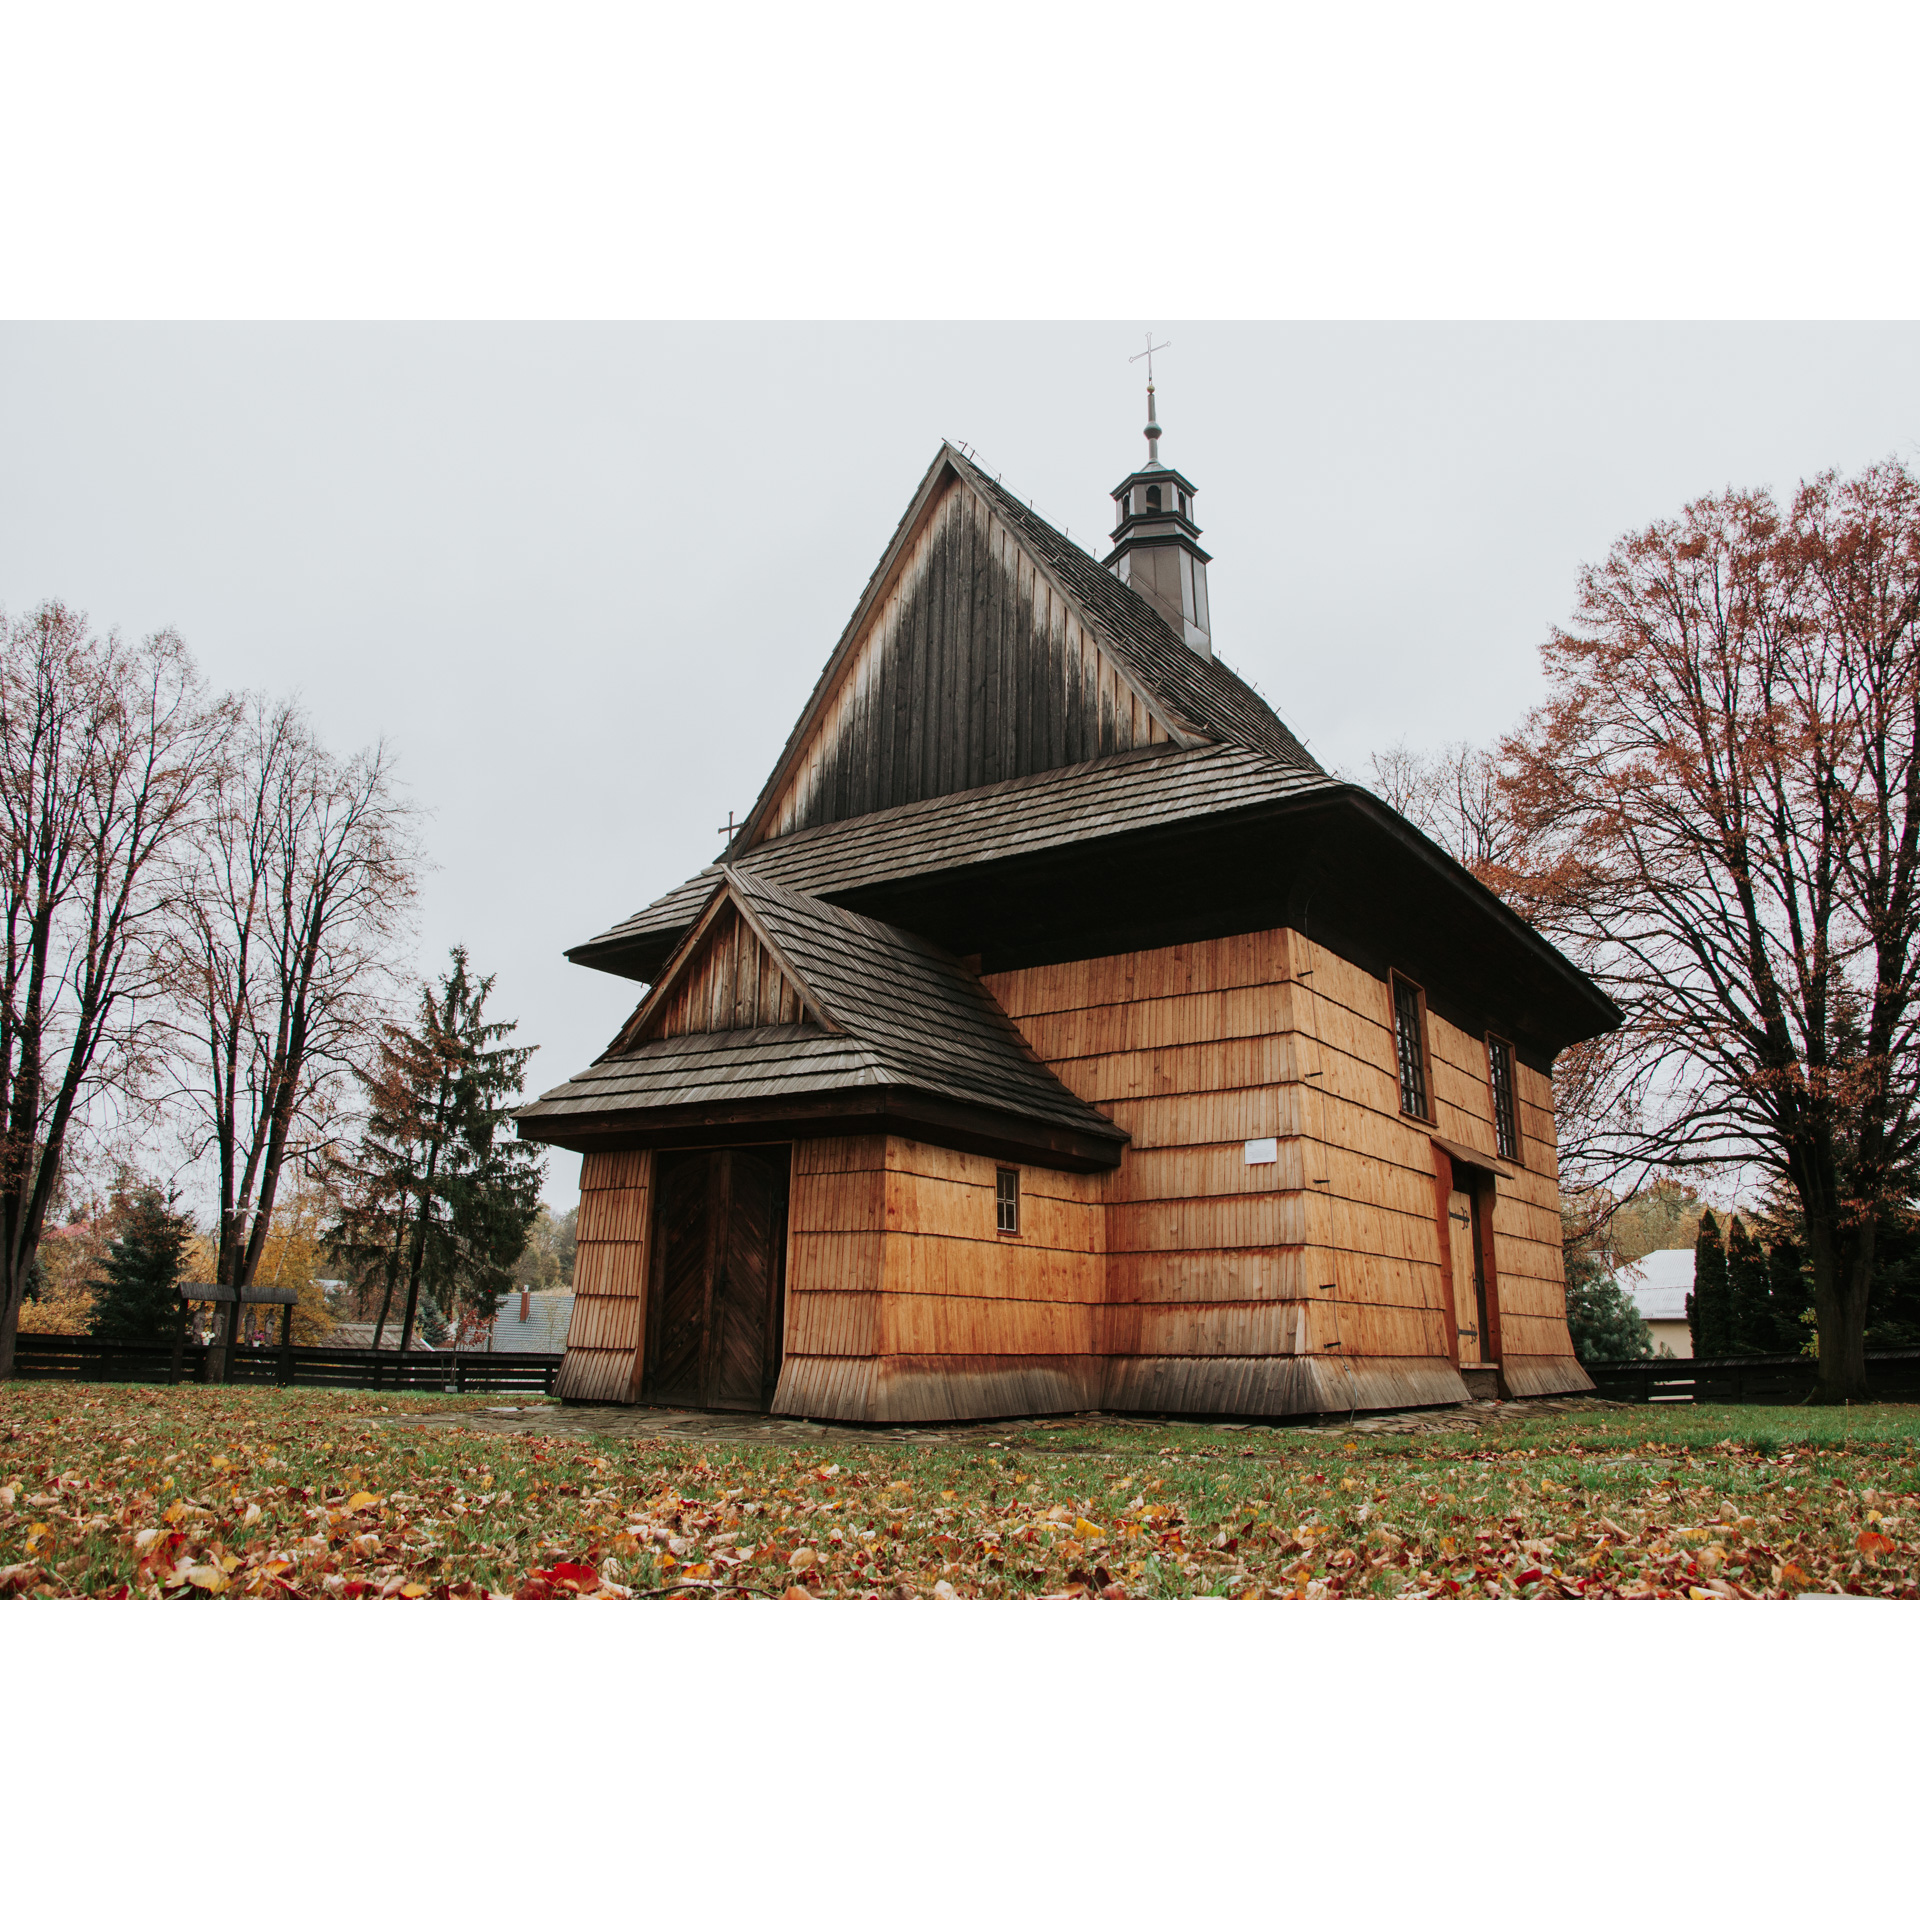 Drewniany, zabytkowy kościół z jasnego drewna i z czarnym trójkątnym dachem, wieżyczką i krzyżem na szczycie